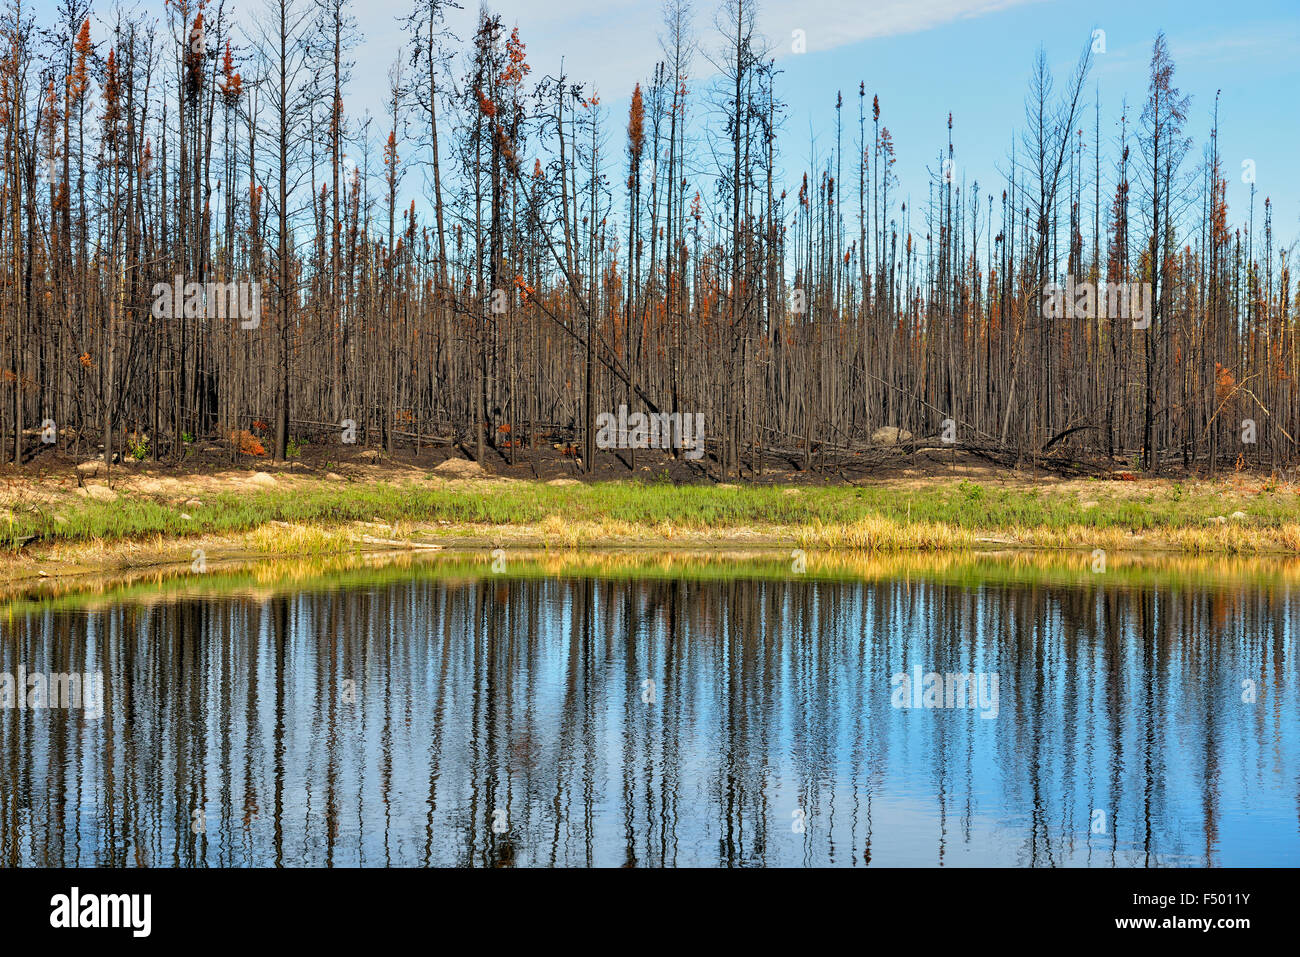 Arbres brûlés dans une zone de feu de forêt boréale, Behchoko, Territoires du Nord-Ouest, Canada Banque D'Images